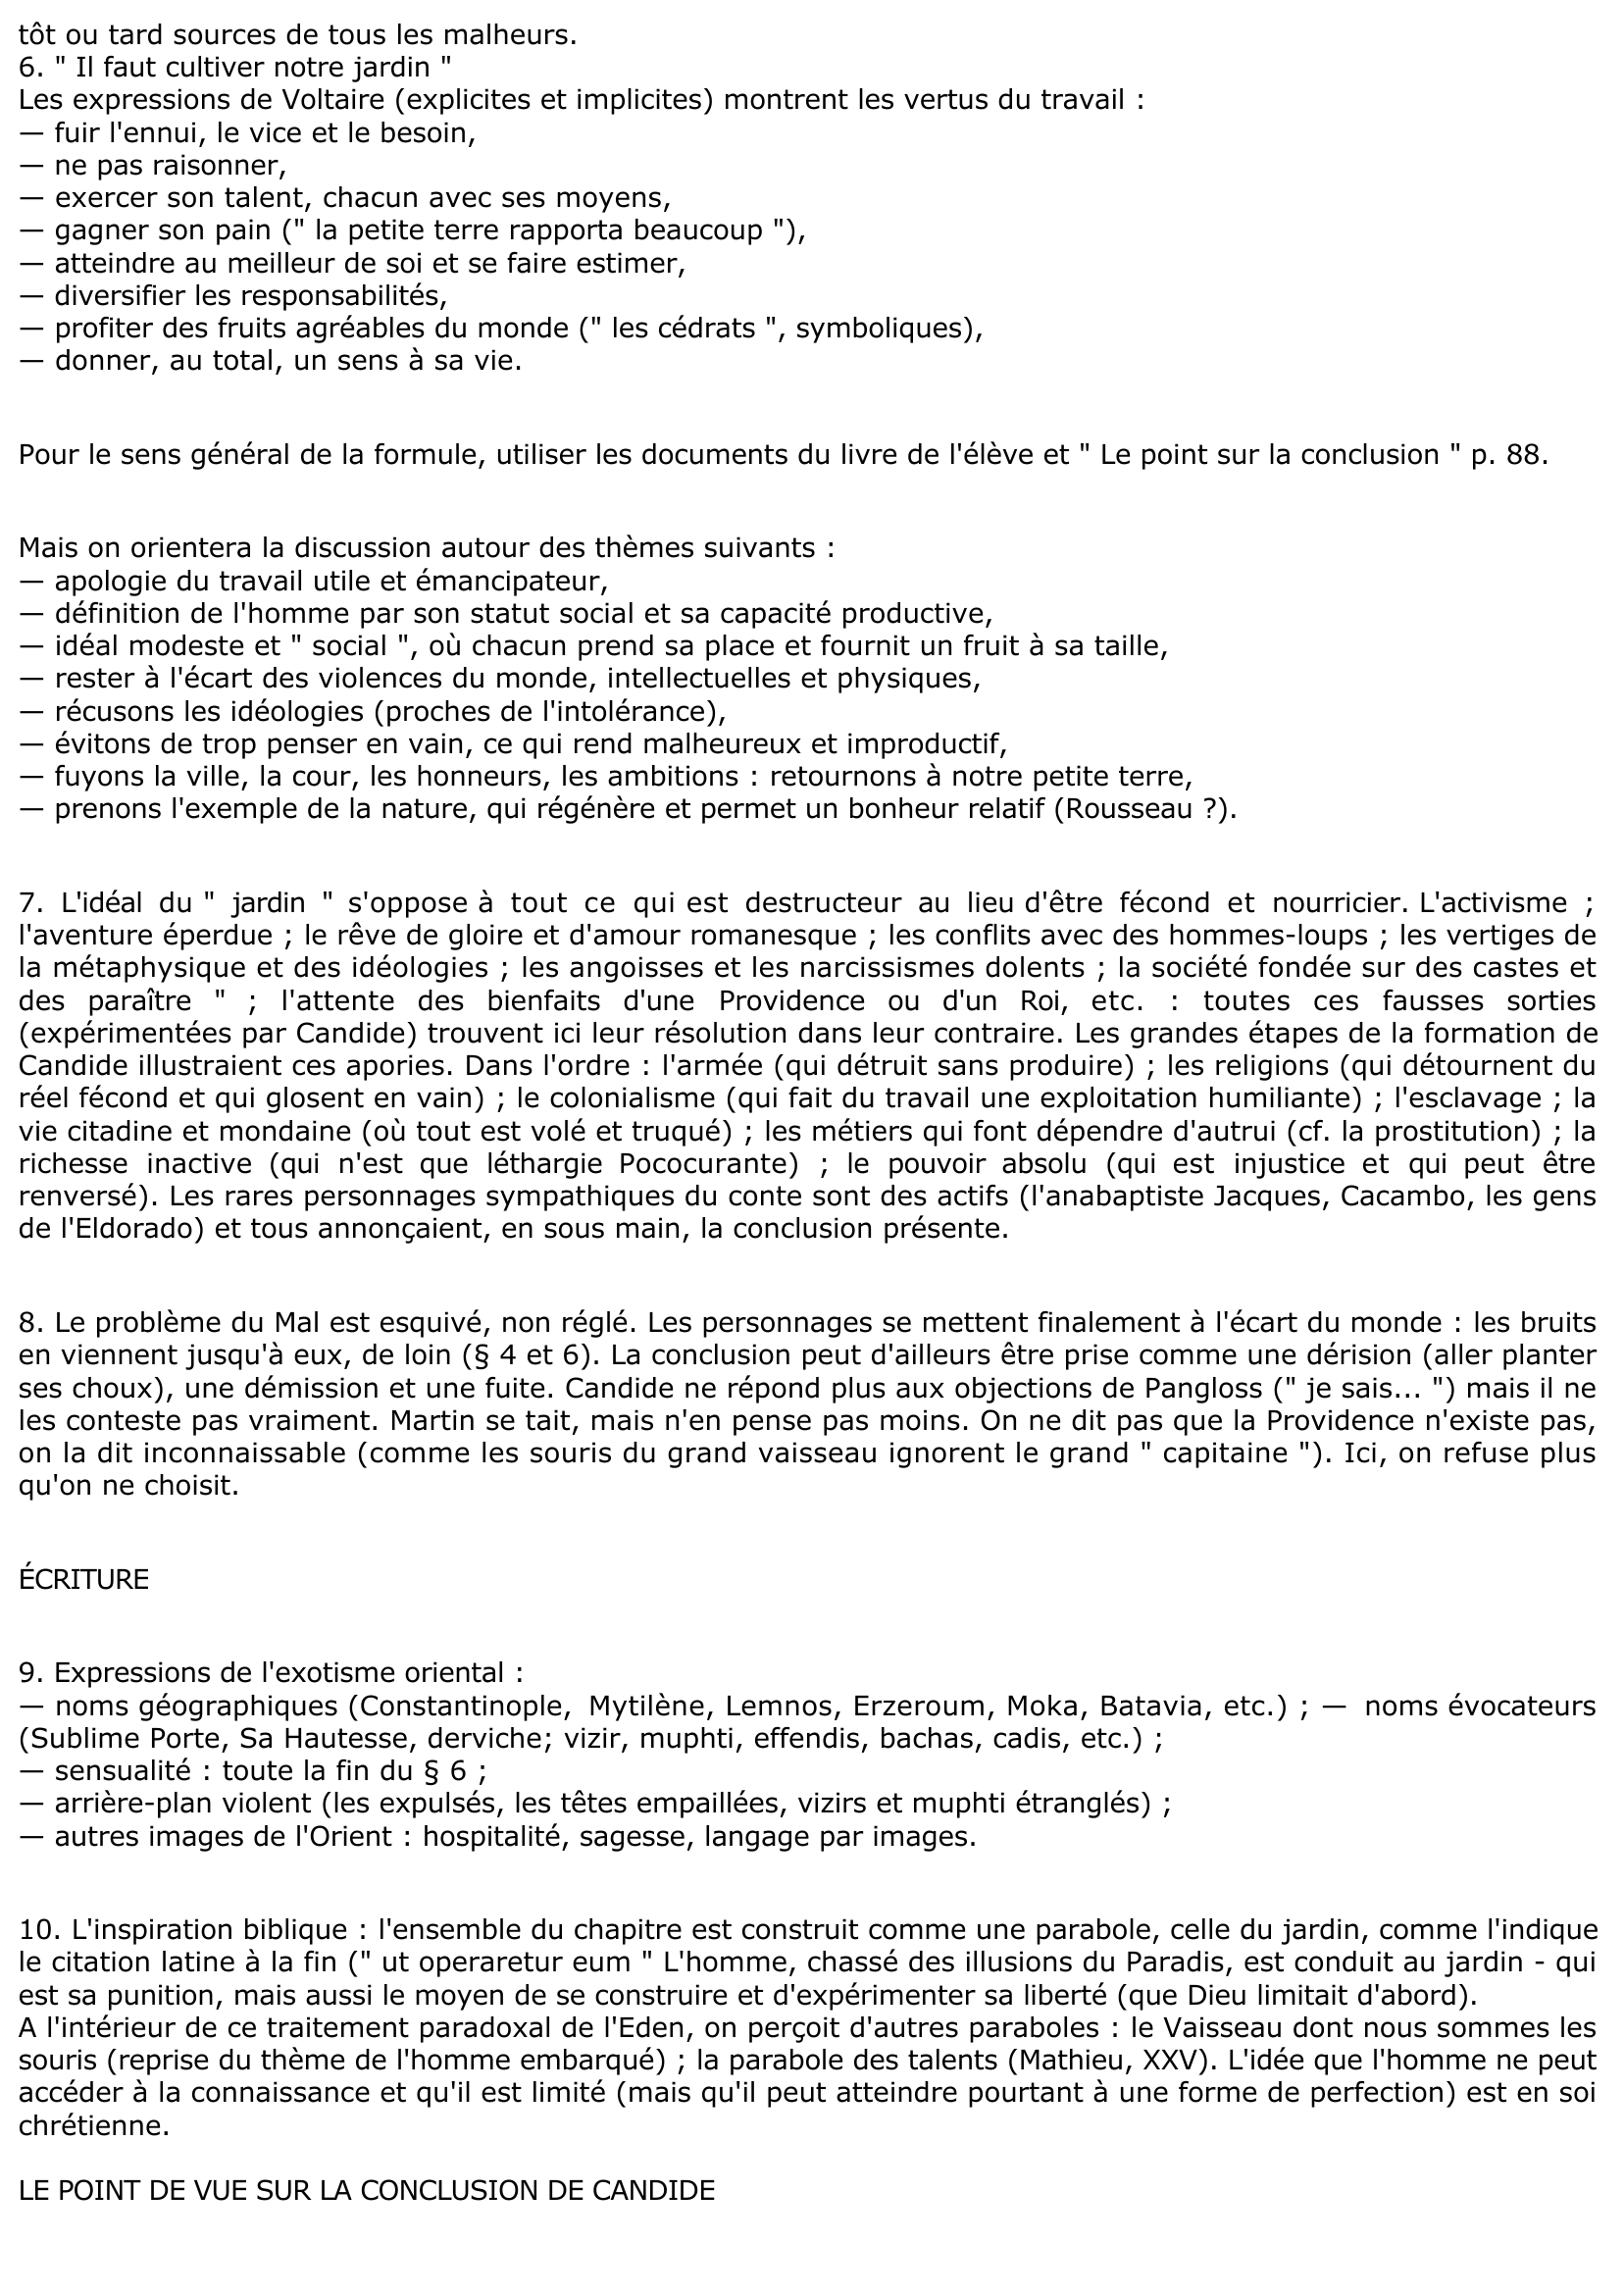 Prévisualisation du document CHAPITRE 30 de CANDIDE DE VOLTAIRE (lecture analytique)